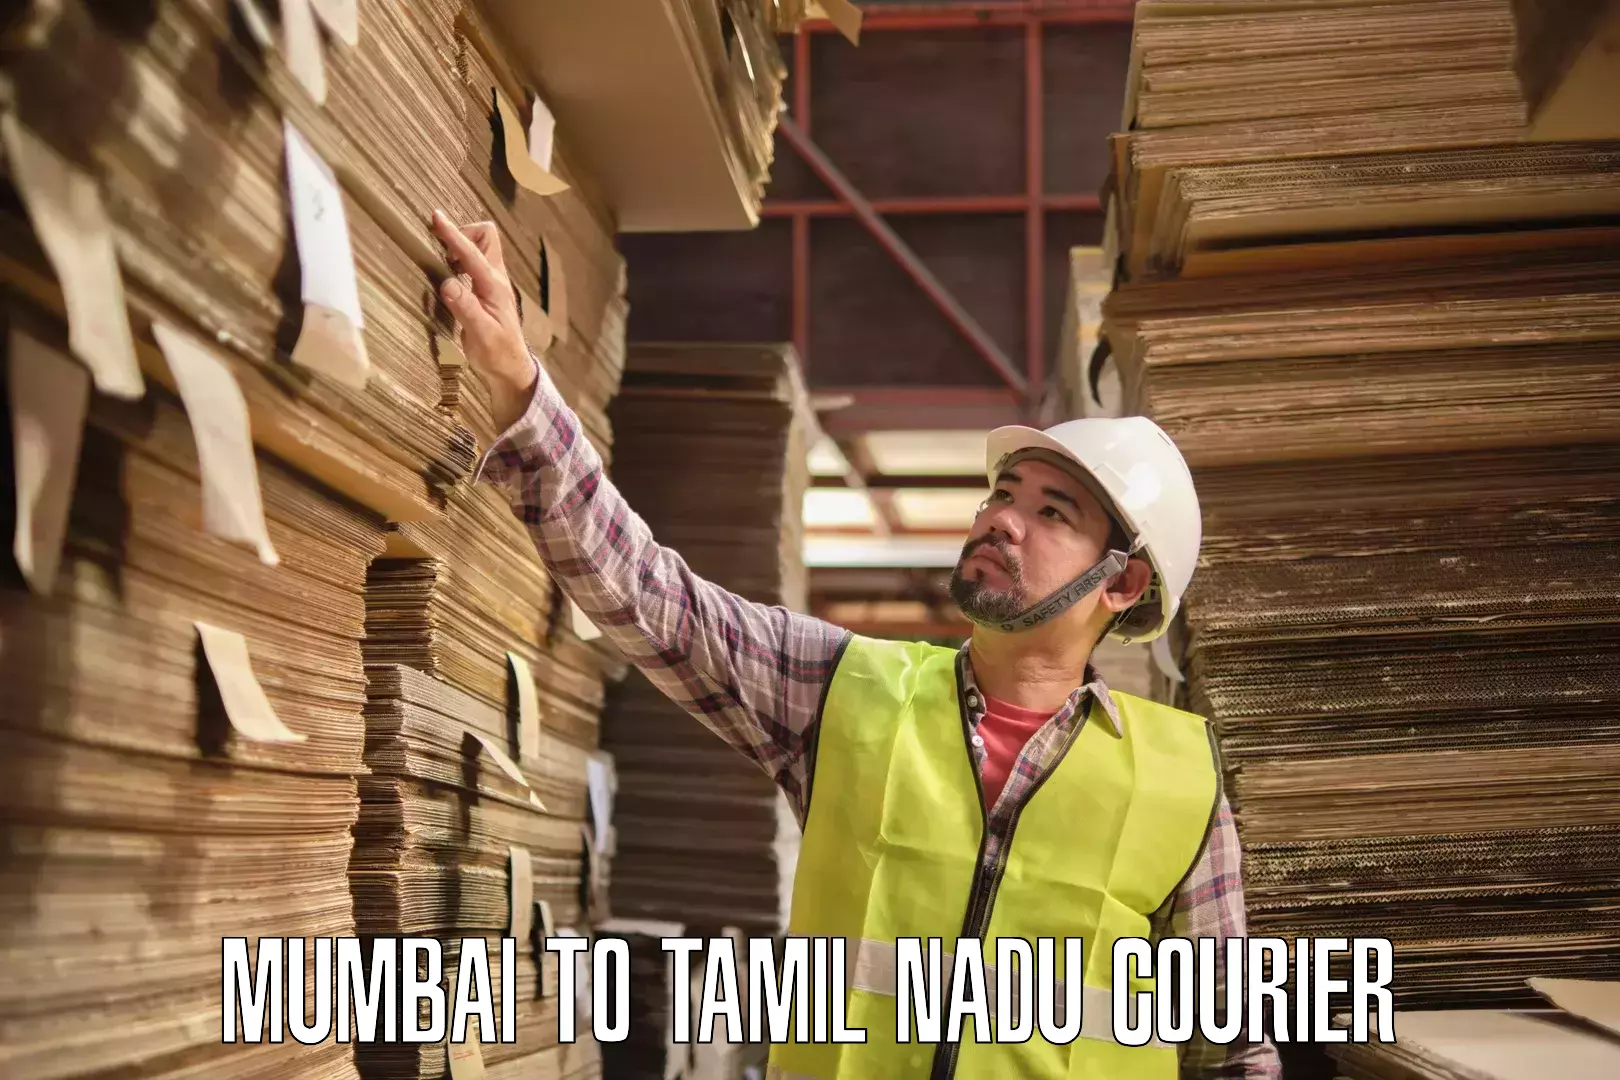 Express courier facilities Mumbai to Tamil Nadu